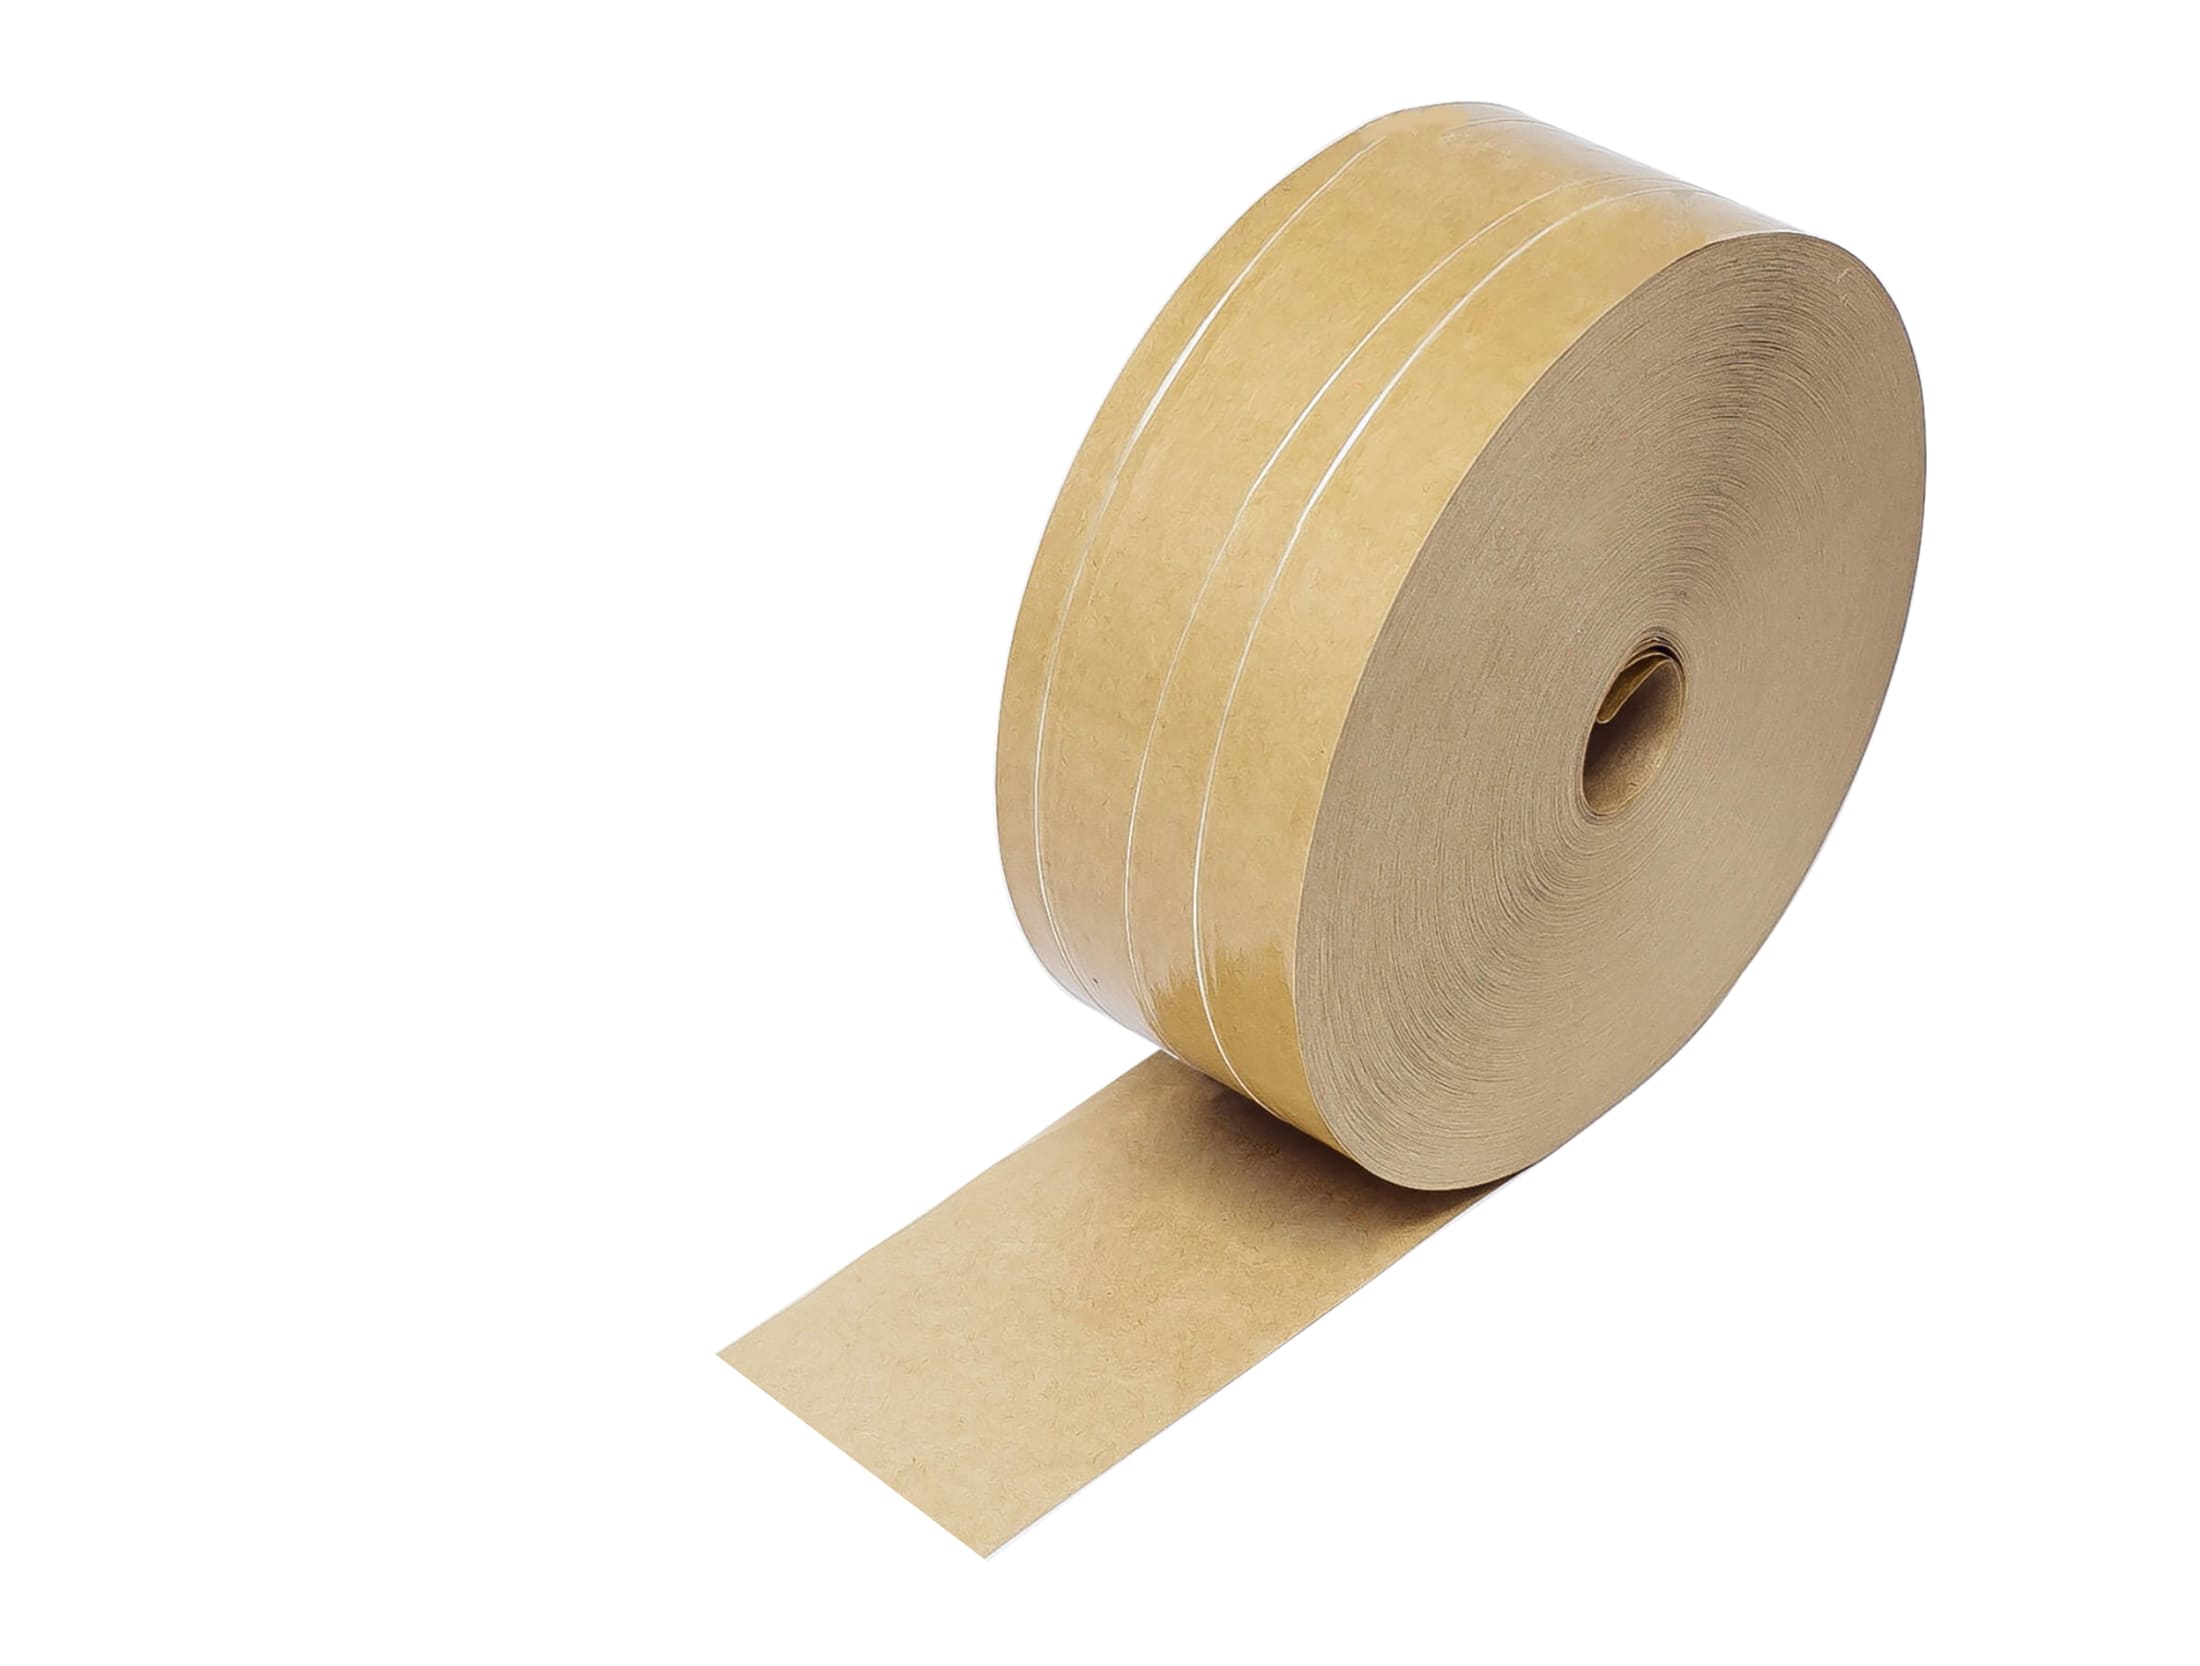 Fita de papel com fios de refor�os no seu dorso. Disponível na cor parda, podendo ser lisa ou personalizada.